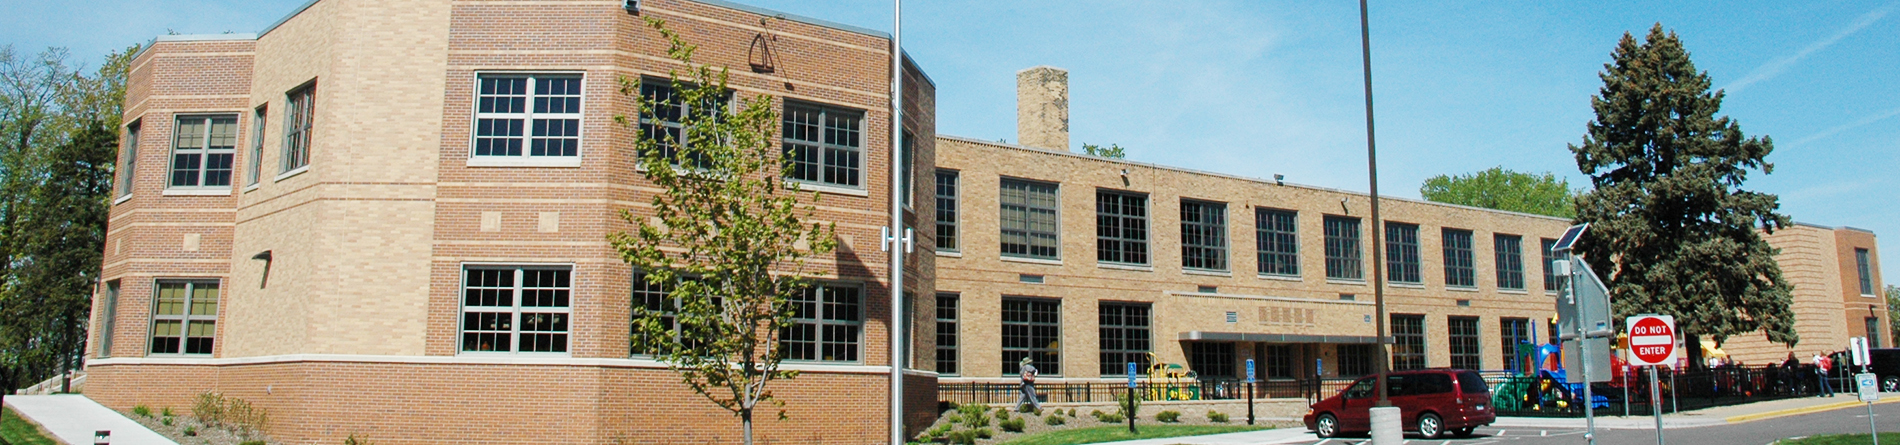 Centar za edukaciju zajednice Minneapolis